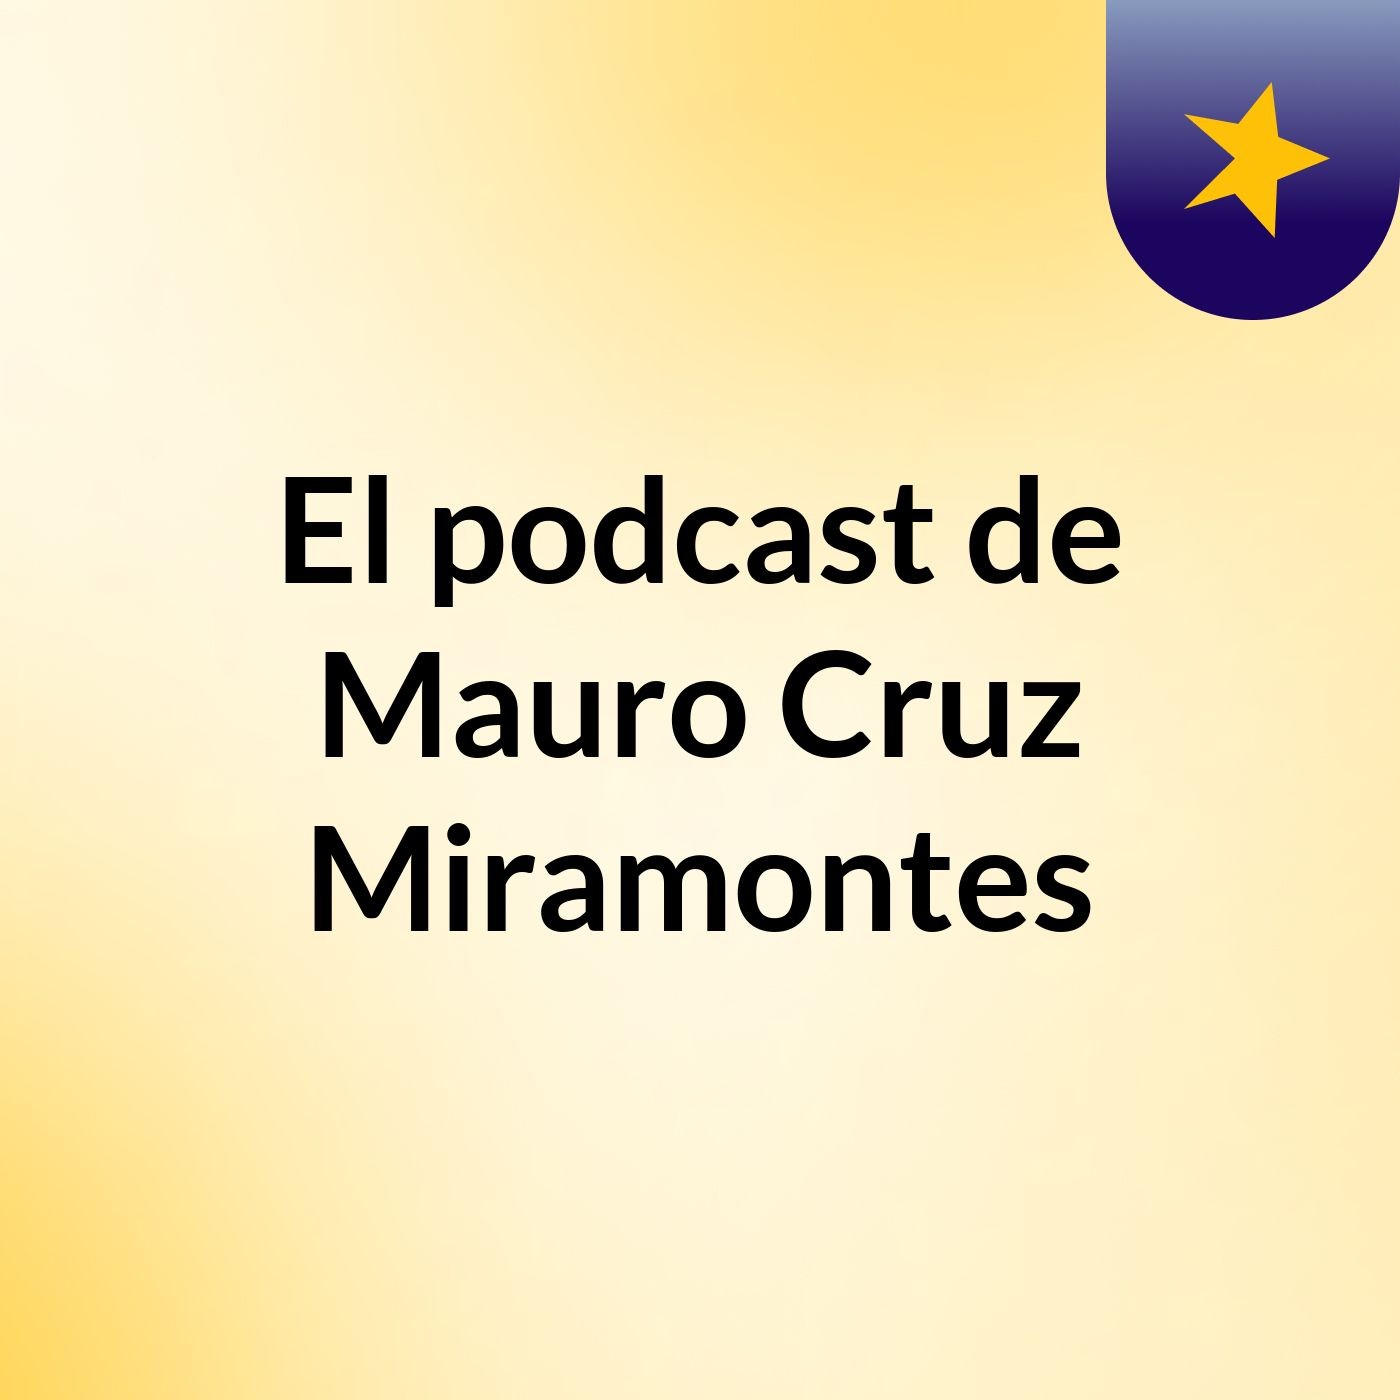 El libro Parlante. Podcast-Mauro.